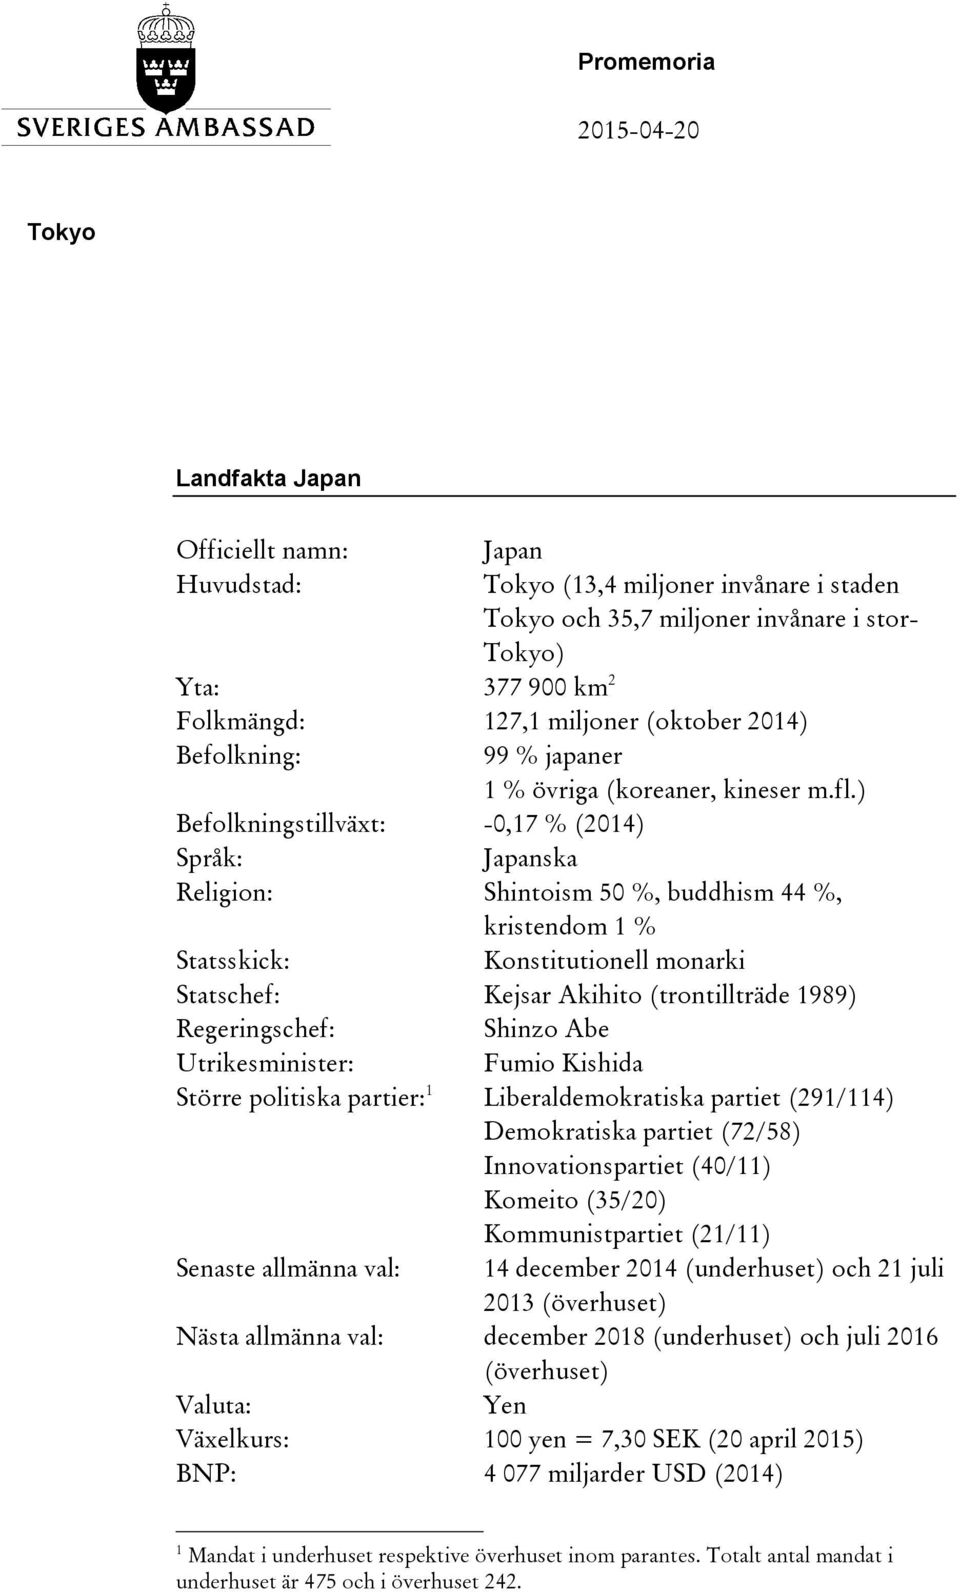 ) Befolkningstillväxt: -0,17 % (2014) Språk: Japanska Religion: Shintoism 50 %, buddhism 44 %, kristendom 1 % Statsskick: Konstitutionell monarki Statschef: Kejsar Akihito (trontillträde 1989)